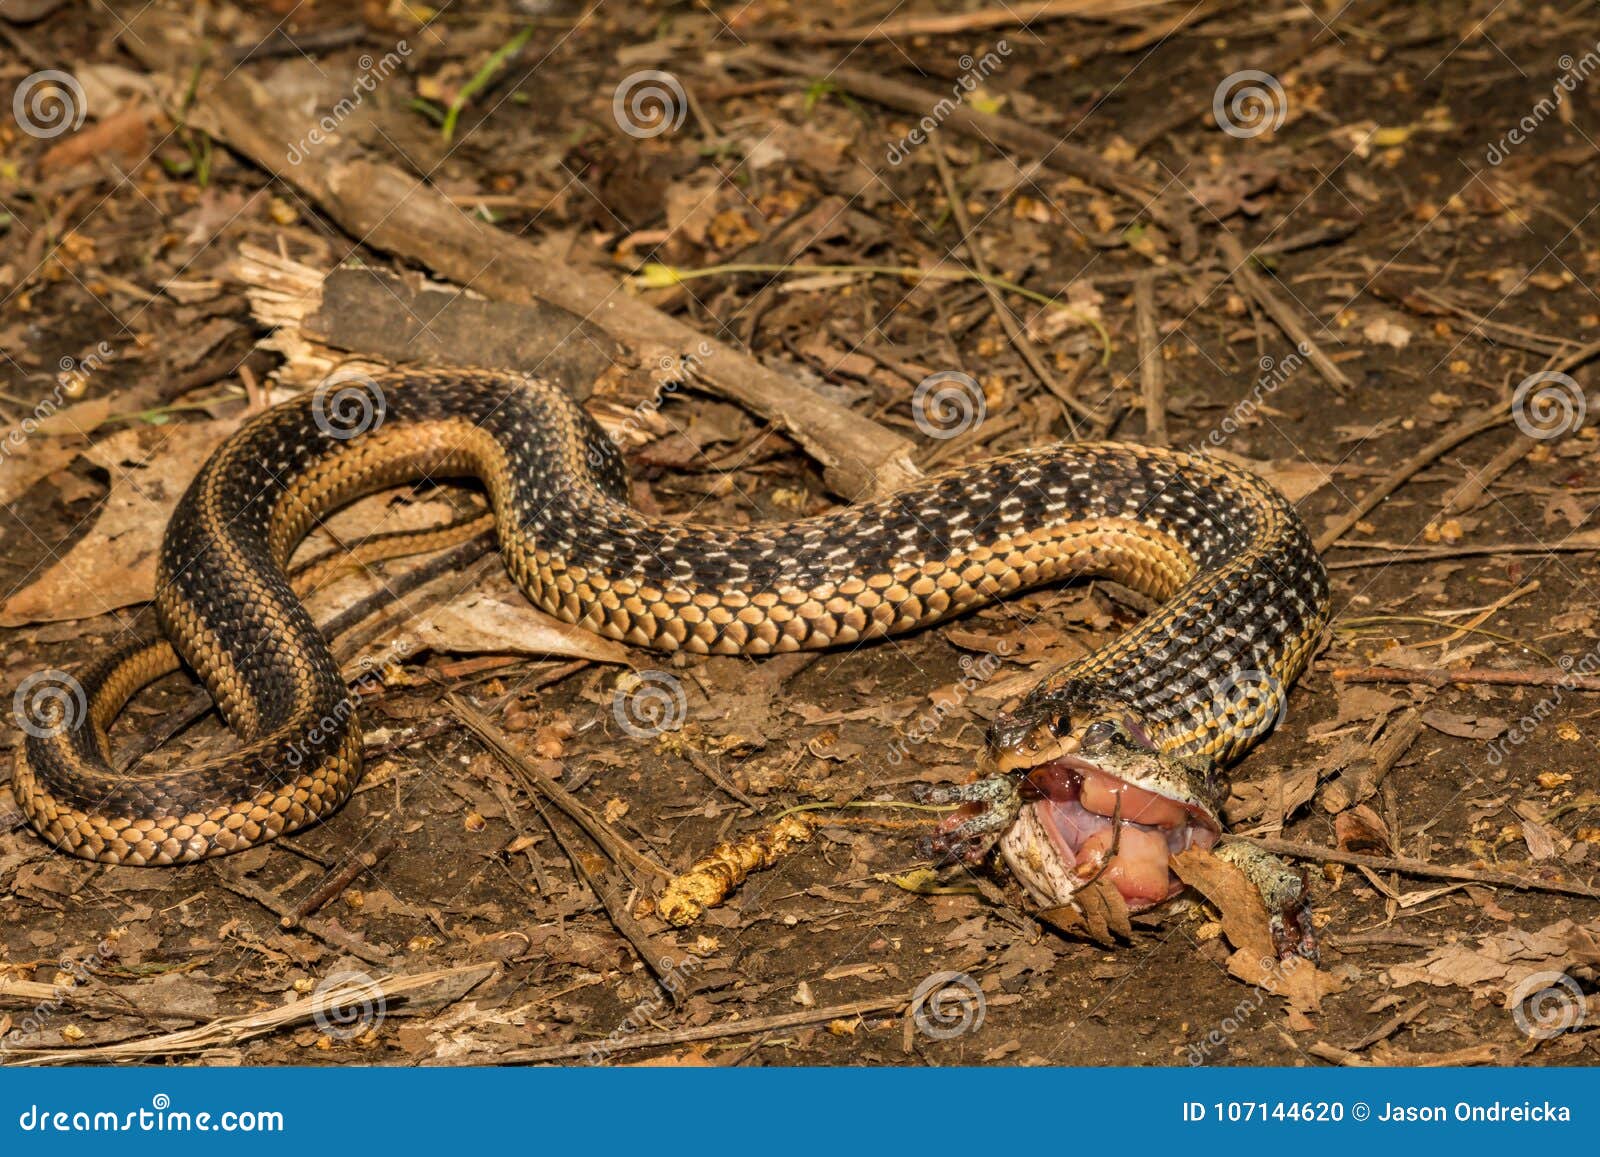 An Eastern Garter Snake Eating Stock Photo Image Of Garter